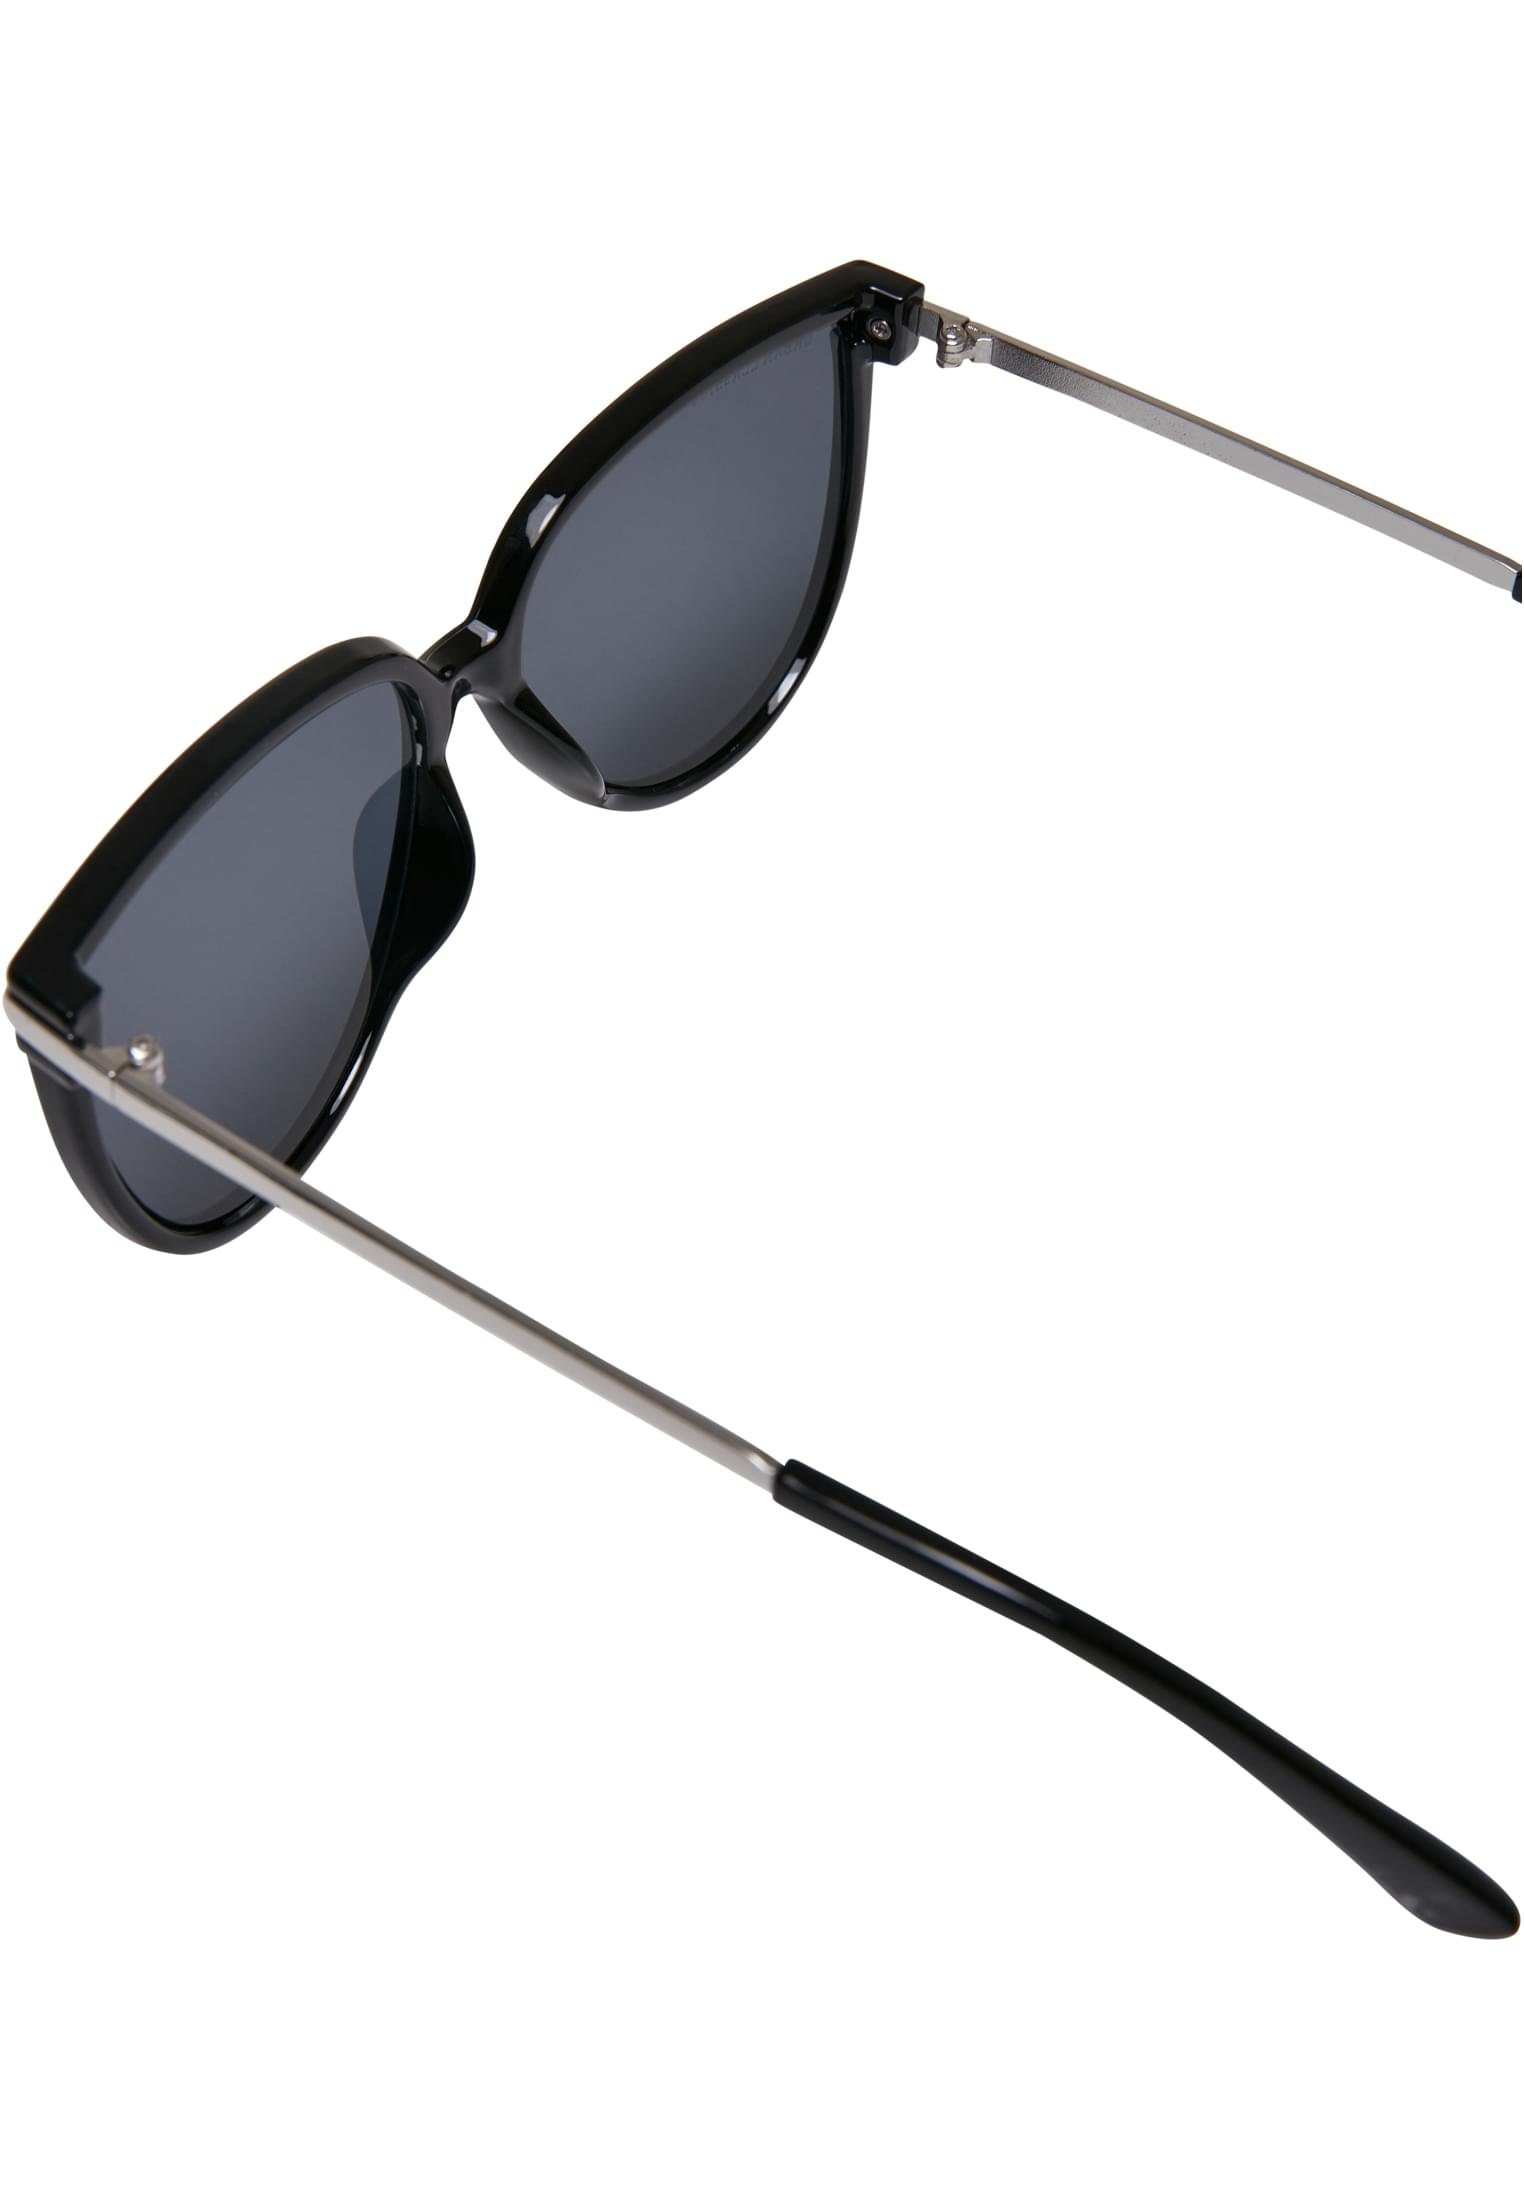 CLASSICS Sonnenbrille Unisex Sunglasses URBAN Milano